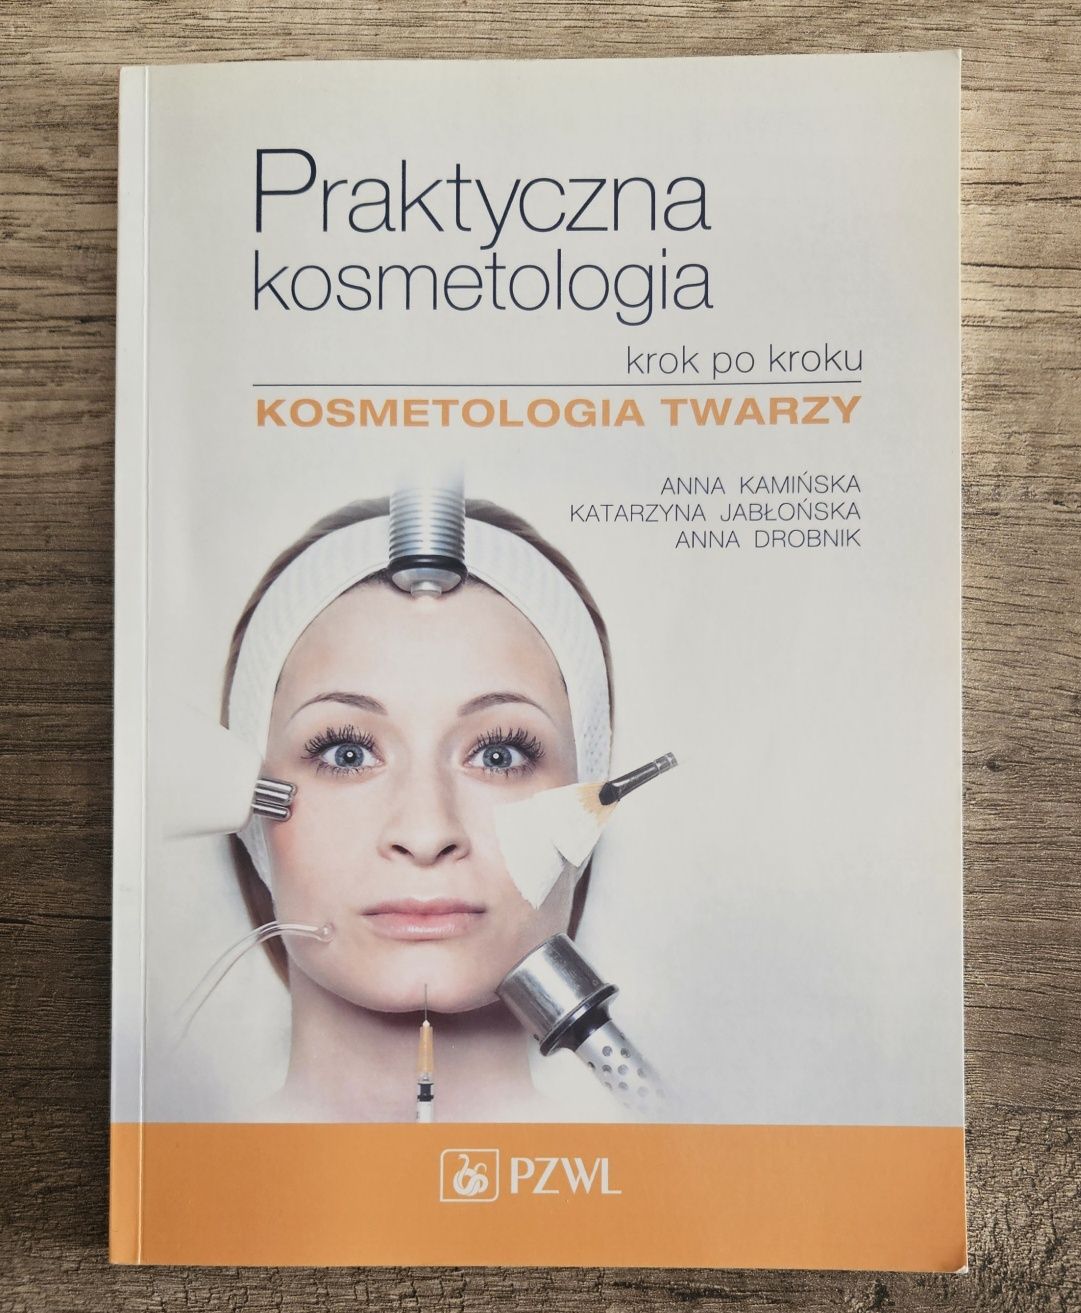 Praktyczna kosmetologia twarzy krok po kroku książka